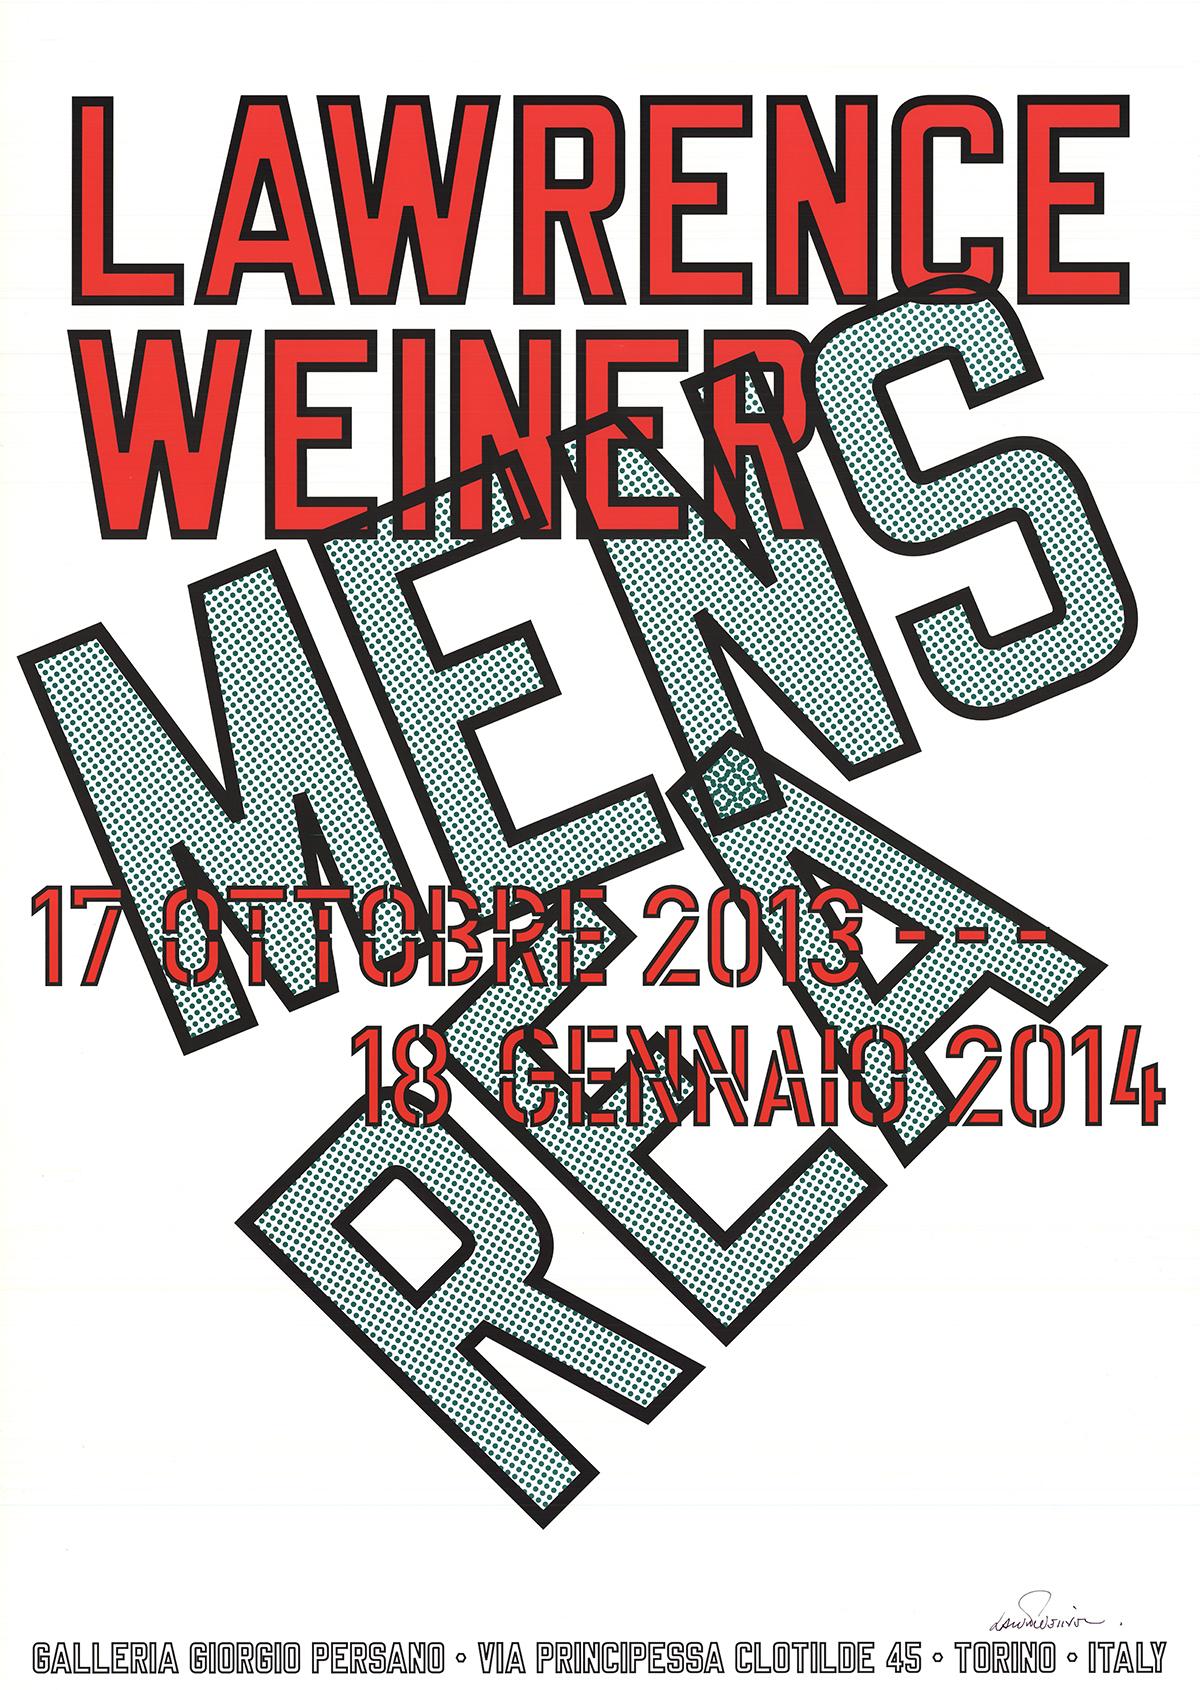 Affiche de l'exposition de Lawrence Weiner intitulée Mens Rea. L'exposition s'est tenue en Italie à la Galleria Giorgio Persano d'octobre 2013 à janvier 2014. Deux légères bosses sont présentes au milieu du bord gauche de l'impression. Signé à la